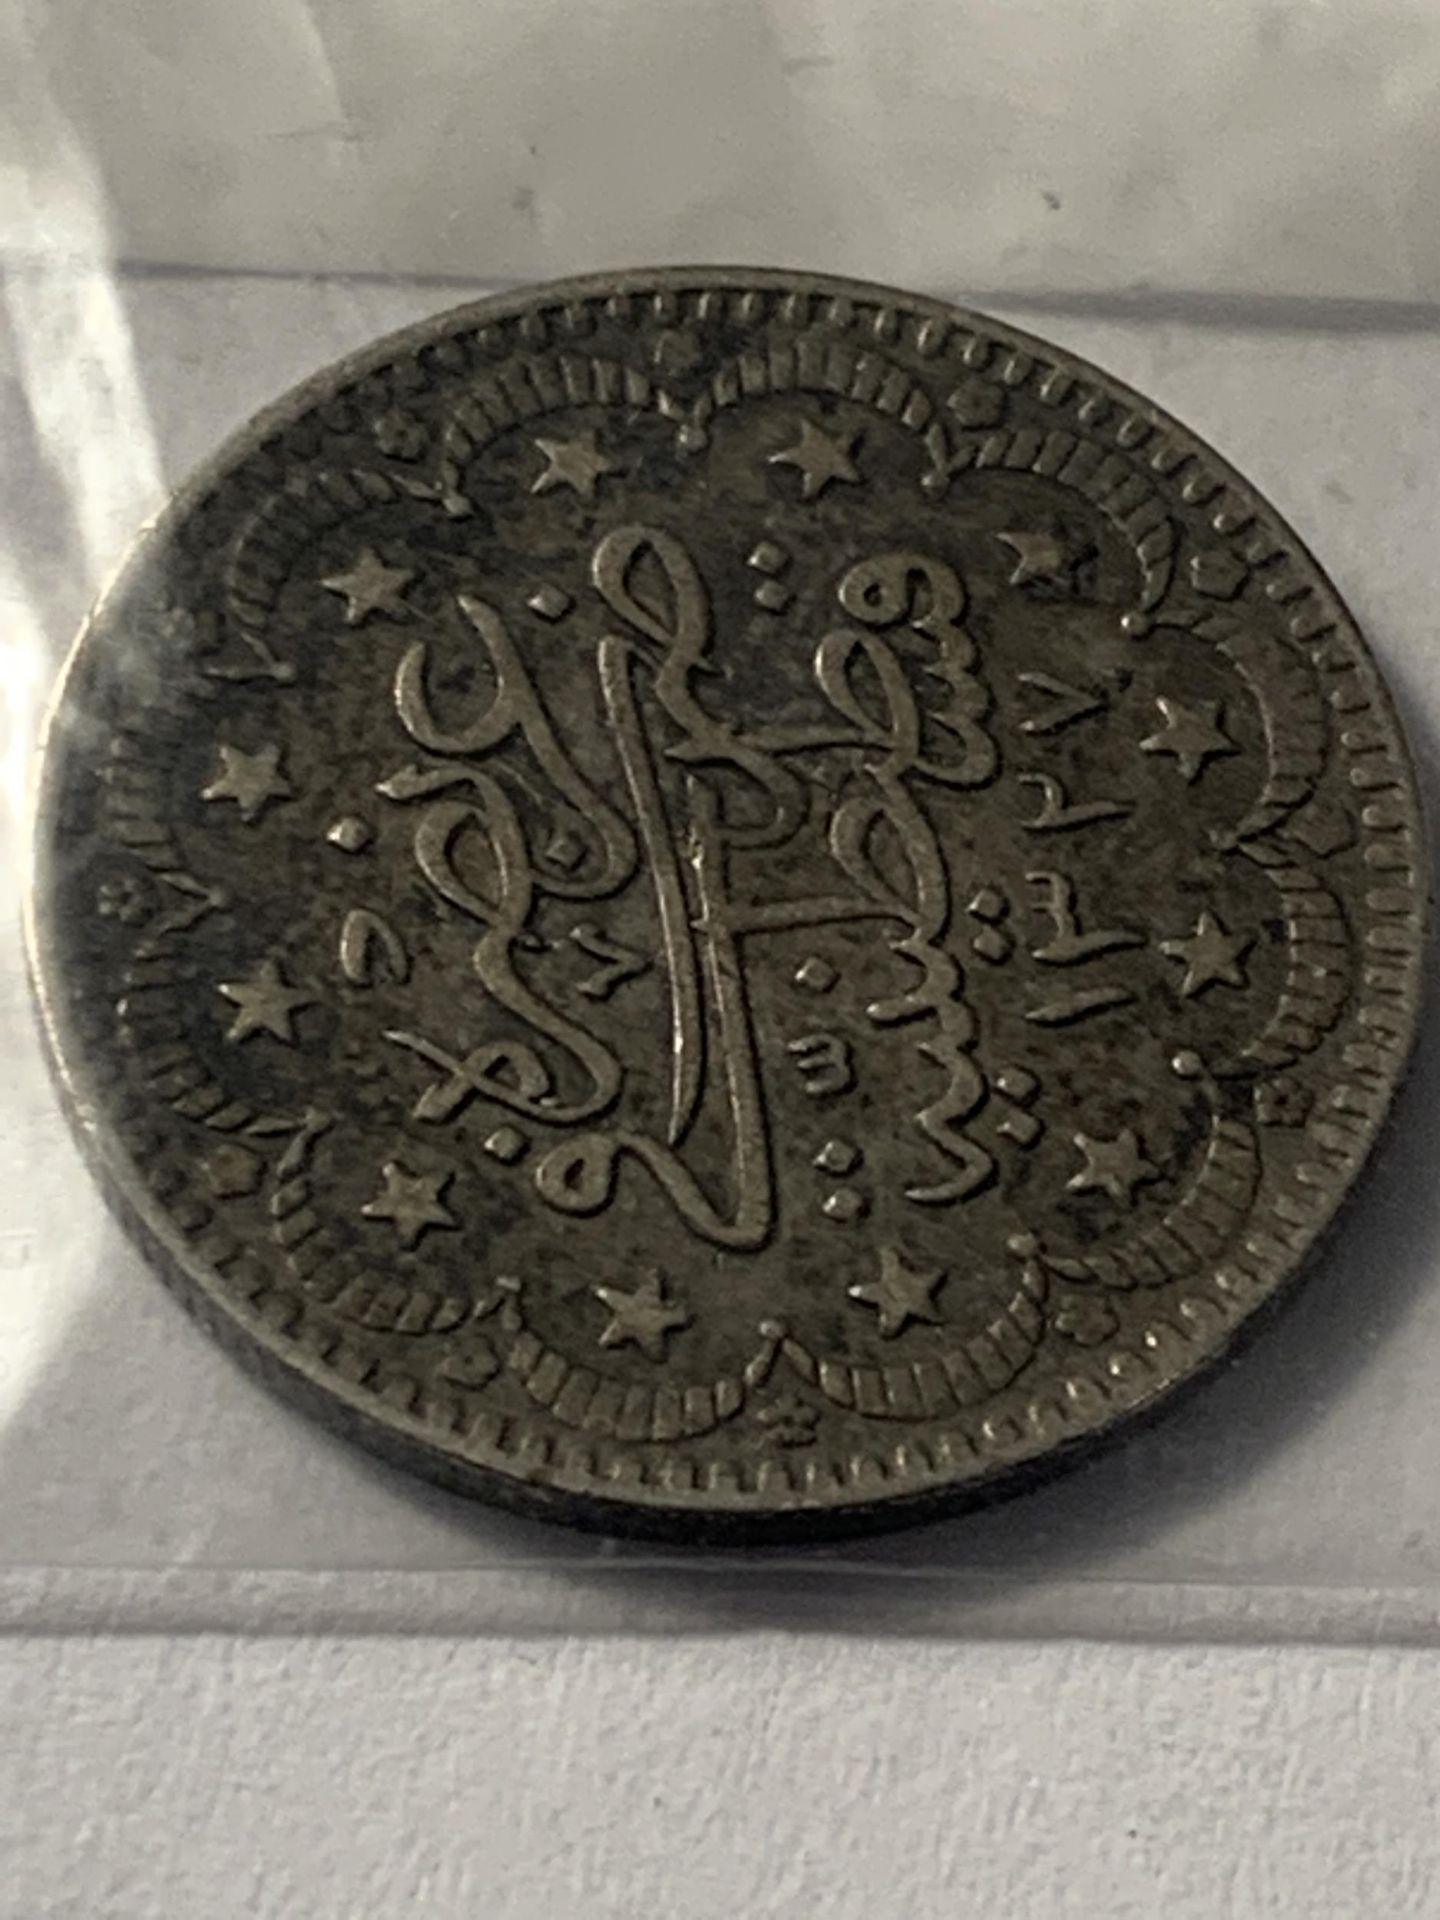 A BELIEVED 1909 OTTOMAN EMPIRE FIVE KURUS COIN